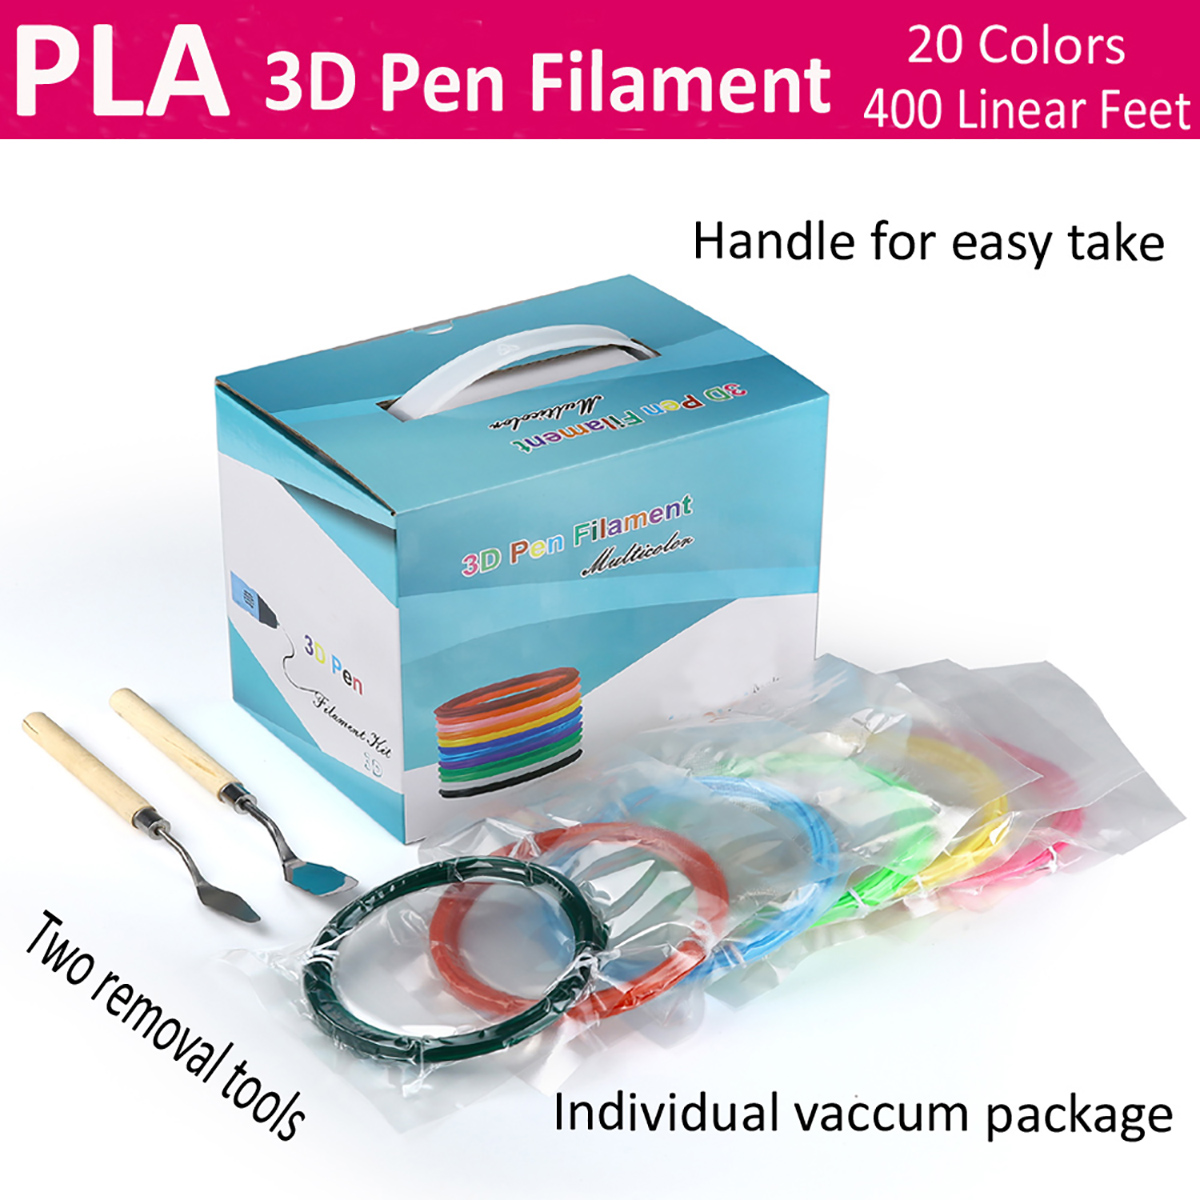 Megadream 3D Pen & PLA Filament REVIEW 